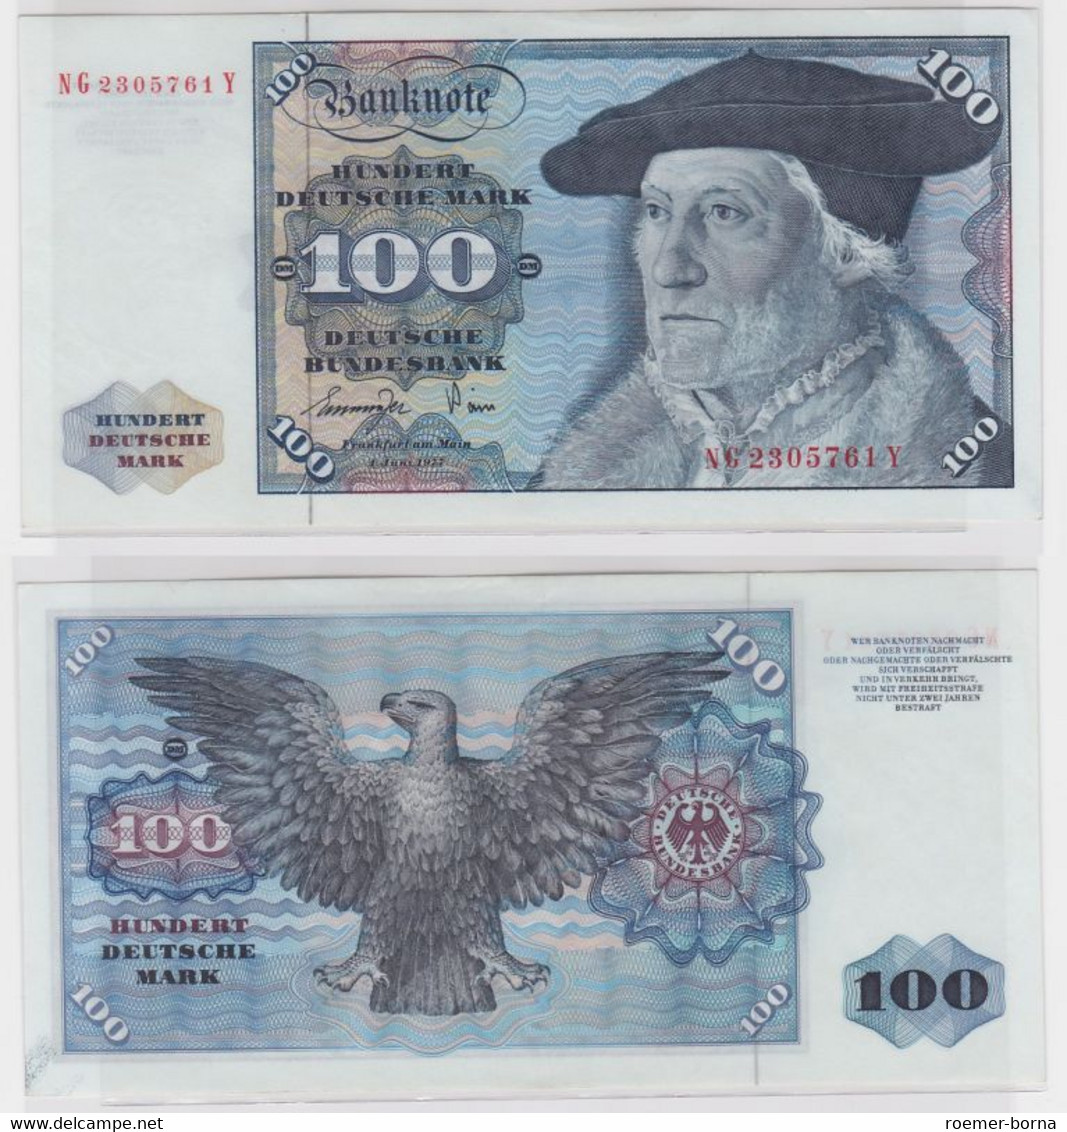 T145157 Banknote 100 DM Deutsche Mark Ro 278a Schein 1.Juni 1977 KN NG 2305761 Y - 100 Deutsche Mark